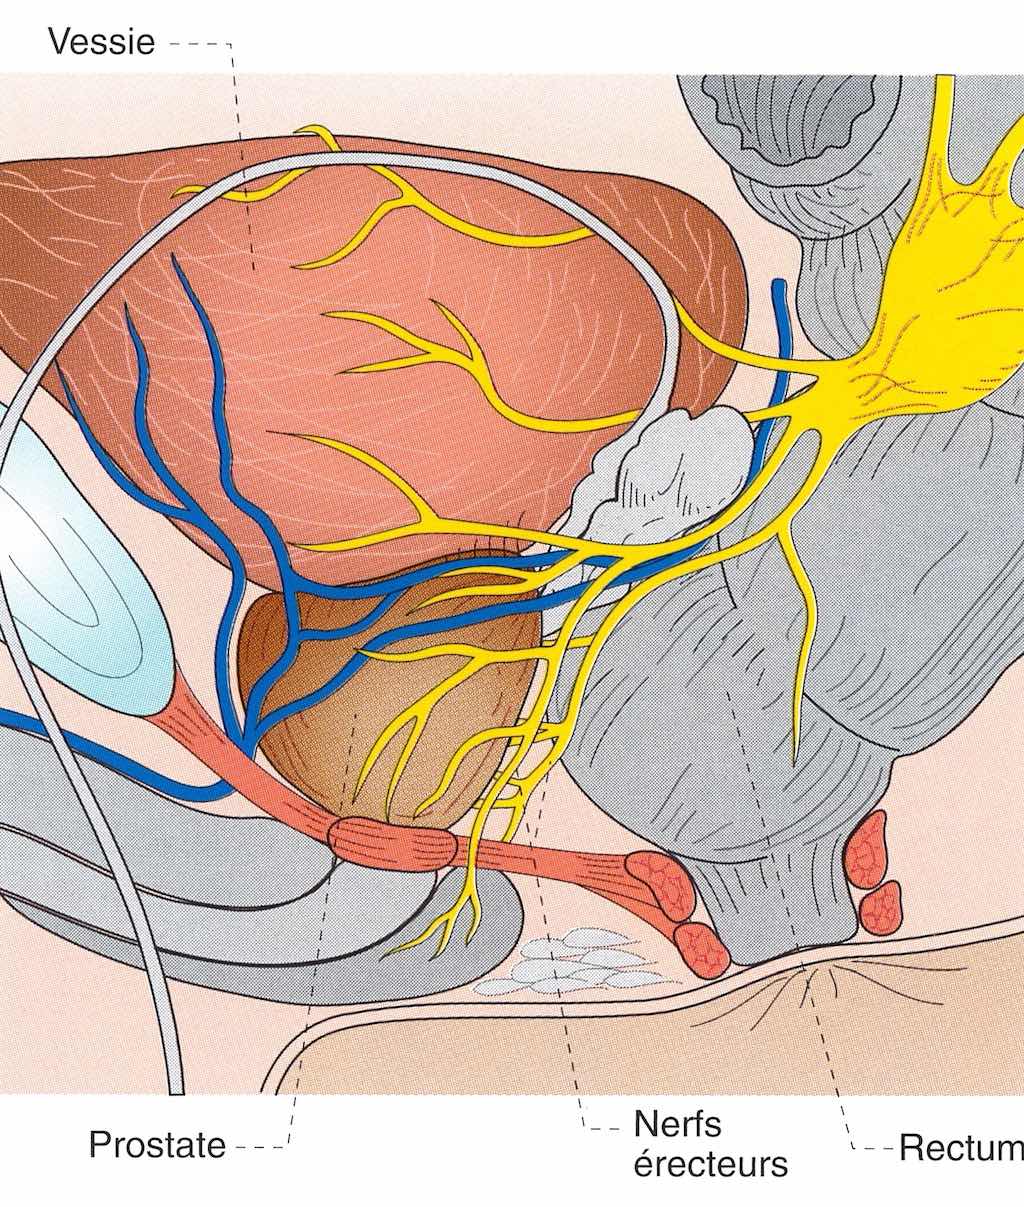 Les nerfs de l'érection sont situés à l'extérieur de la prostate